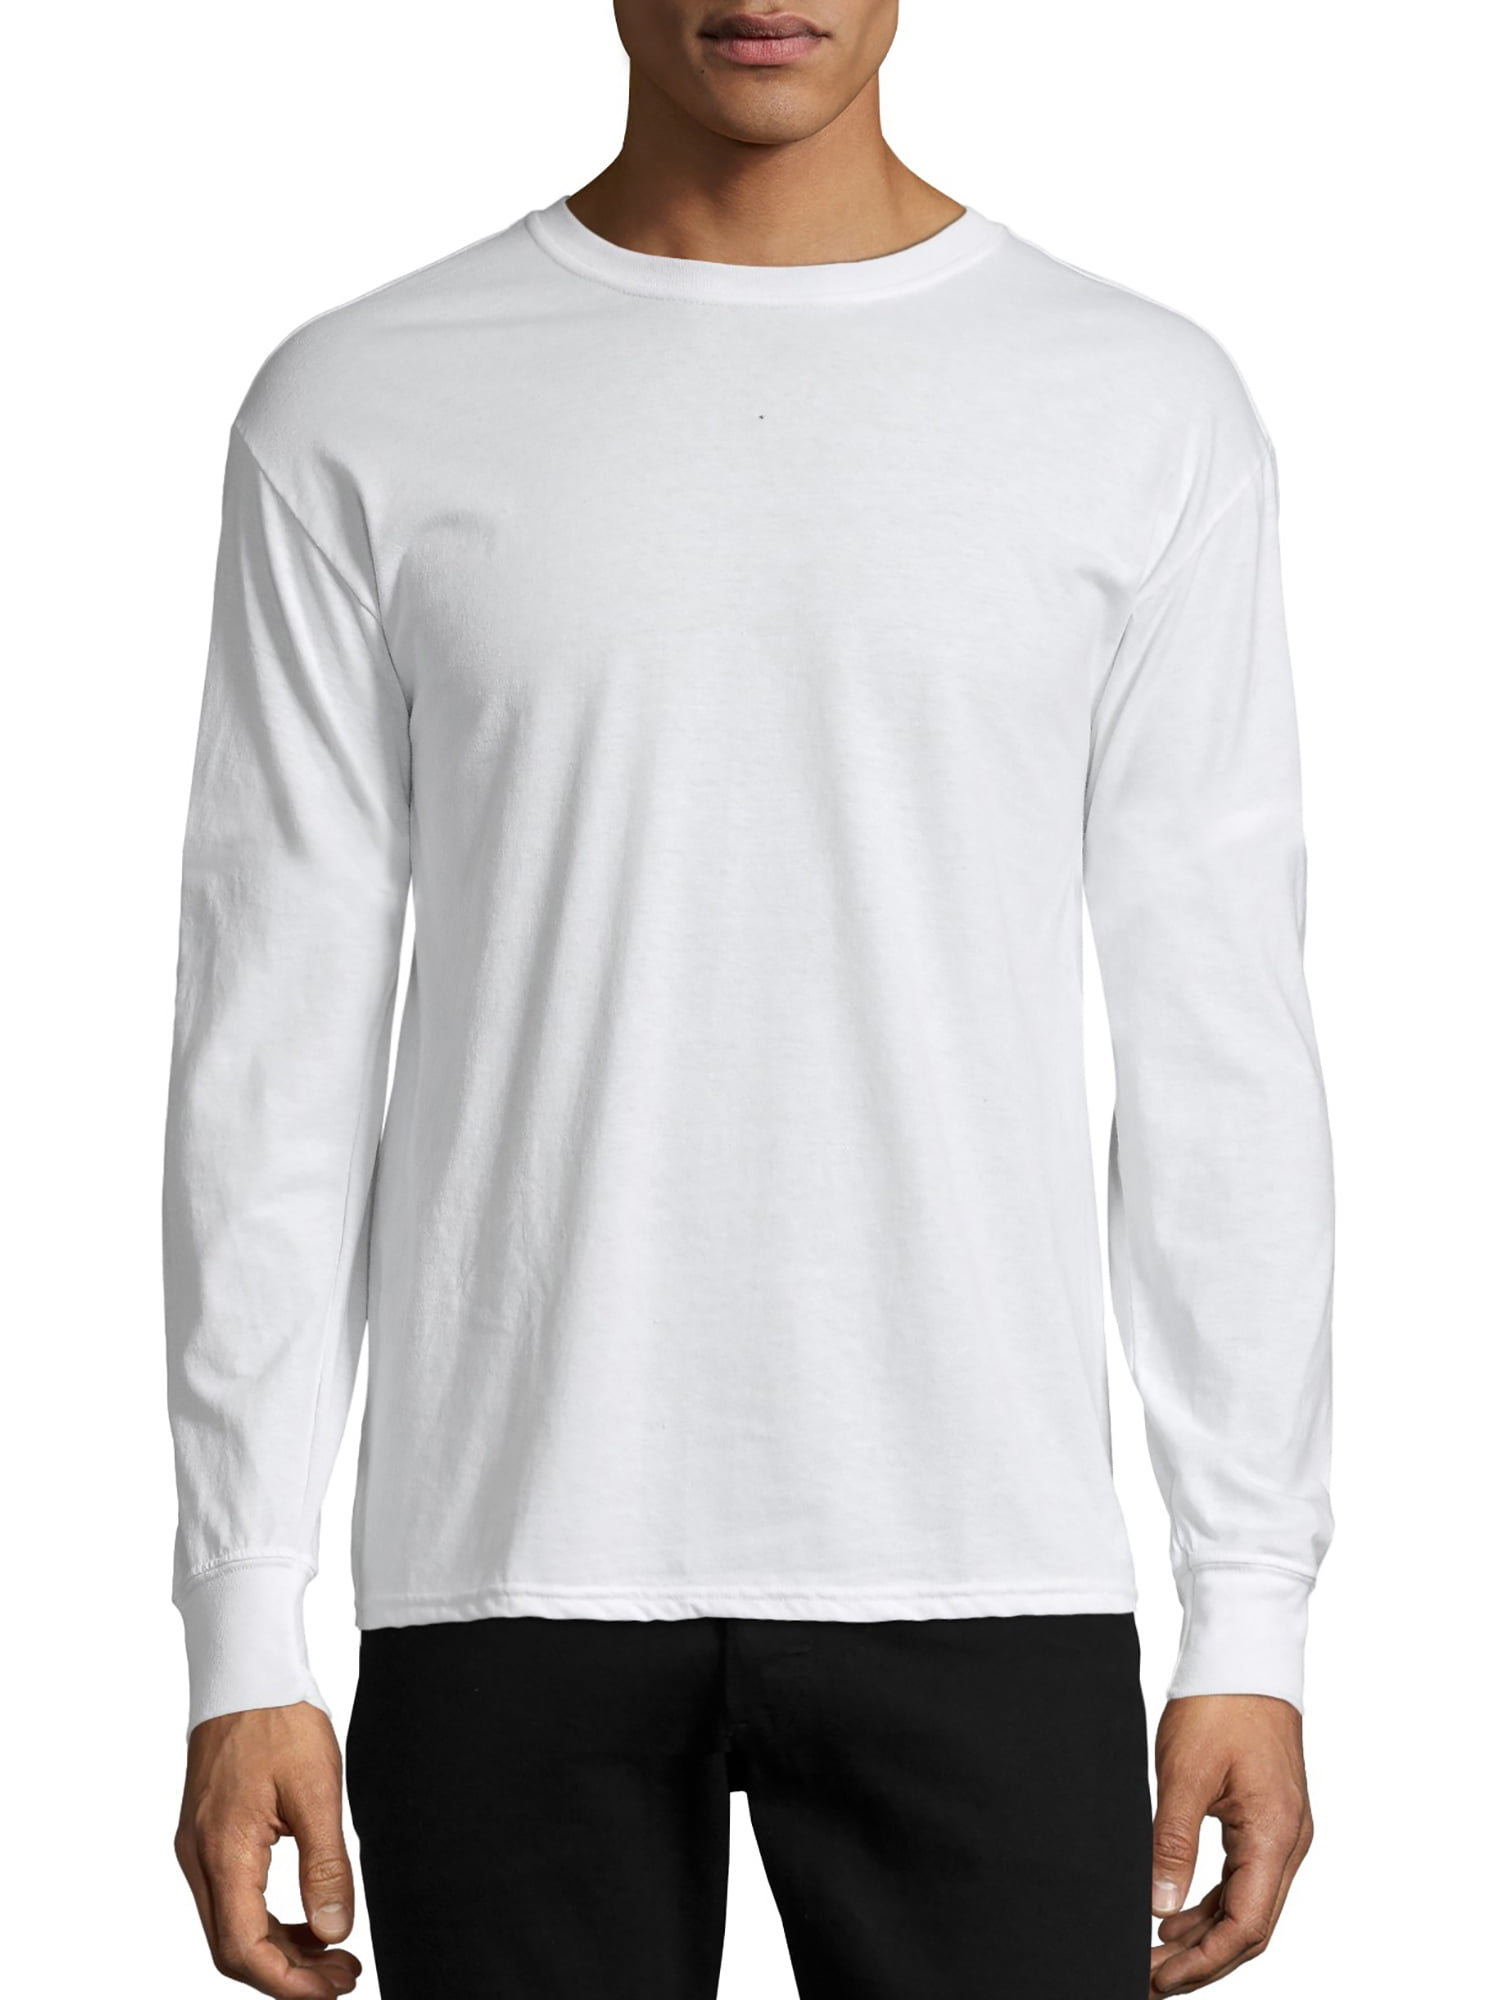 Hanes Men's X-Temp Lightweight Long Sleeve T-Shirt, Up to size 3XL ...